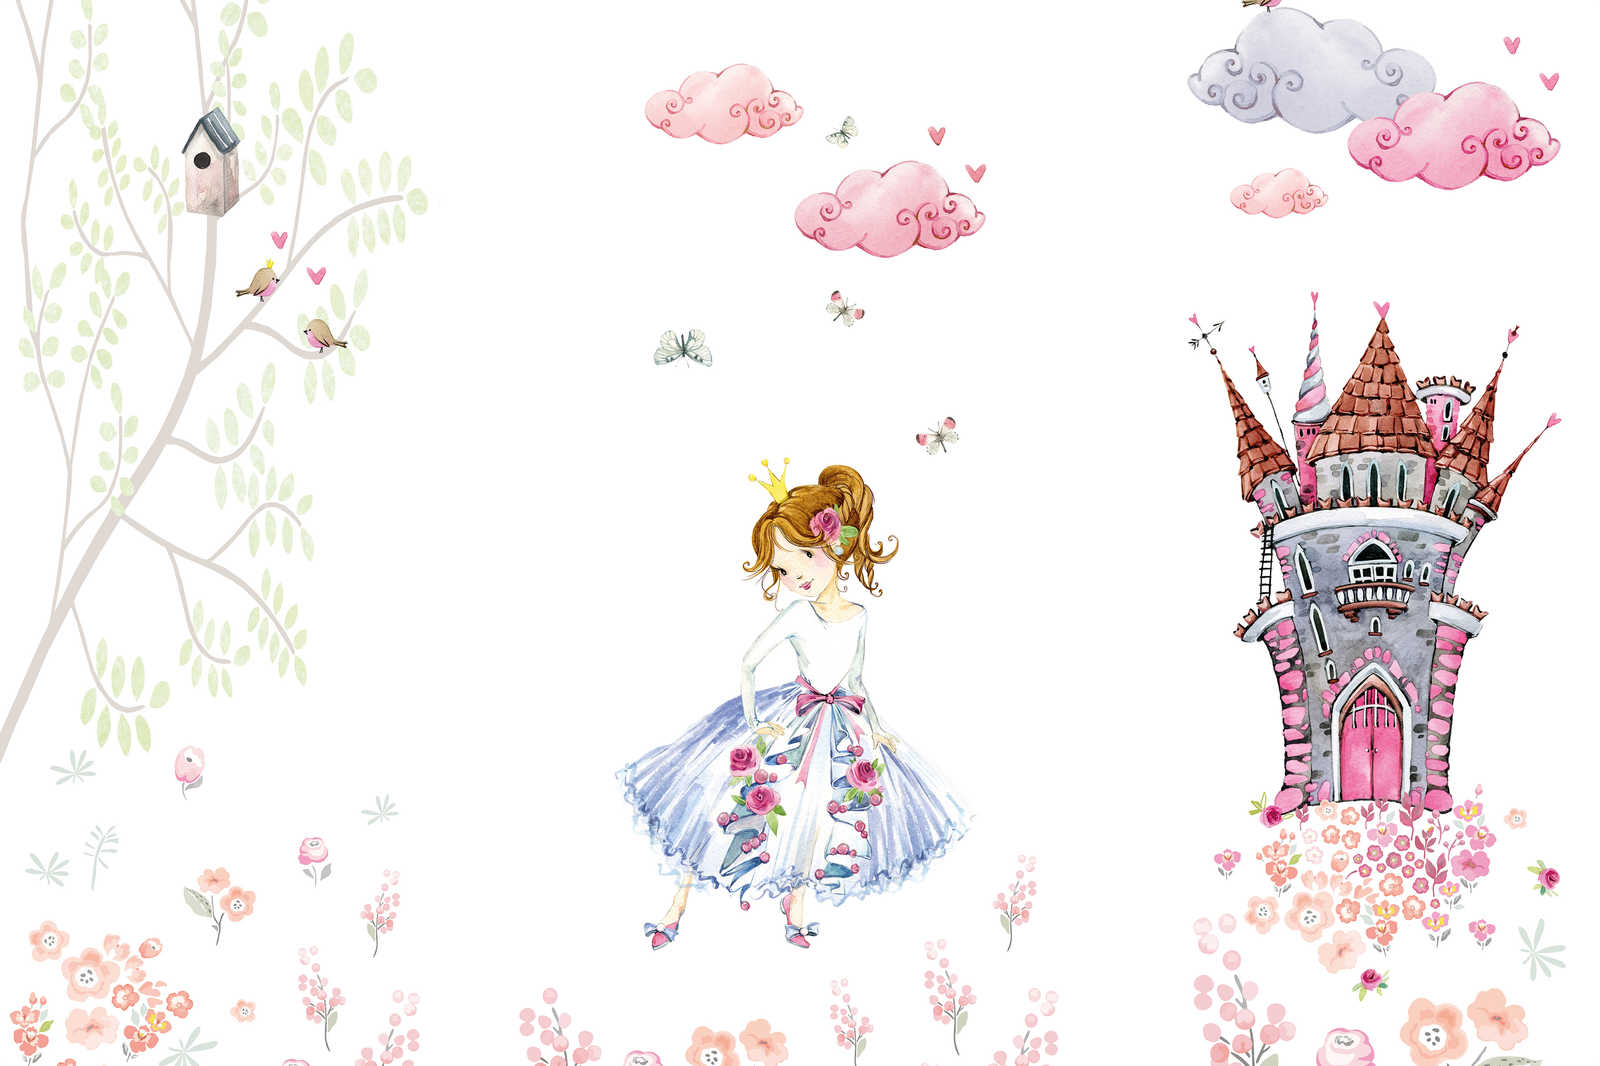             Leinwandbild mit Prinzessin im Schlossgarten Kinderzimmer – 0,90 m x 0,60 m
        